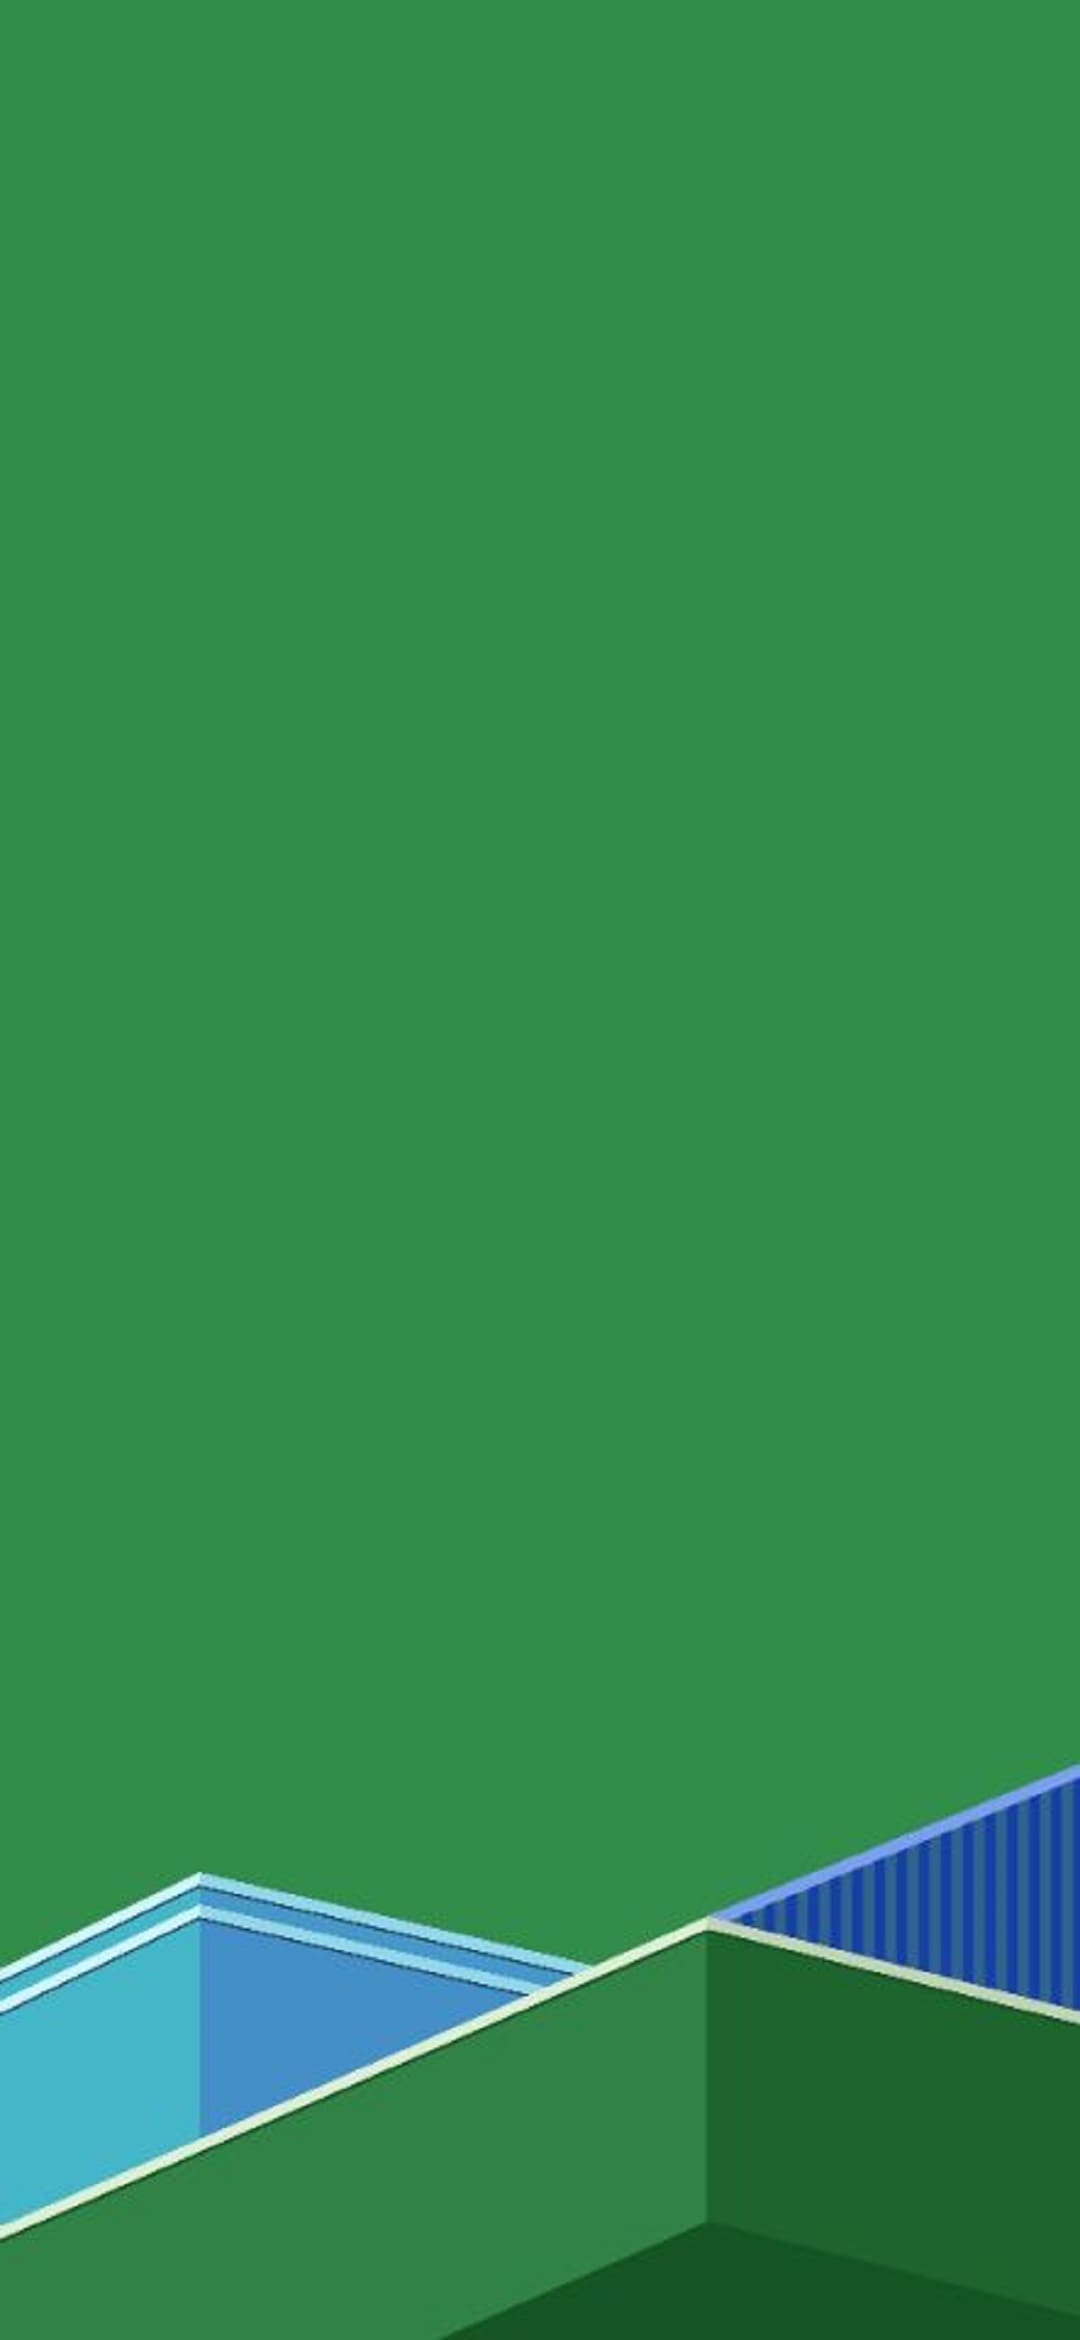 fondo de pantalla de oppo r9s,verde,azul,deporte de raqueta,tiempo de día,hoja